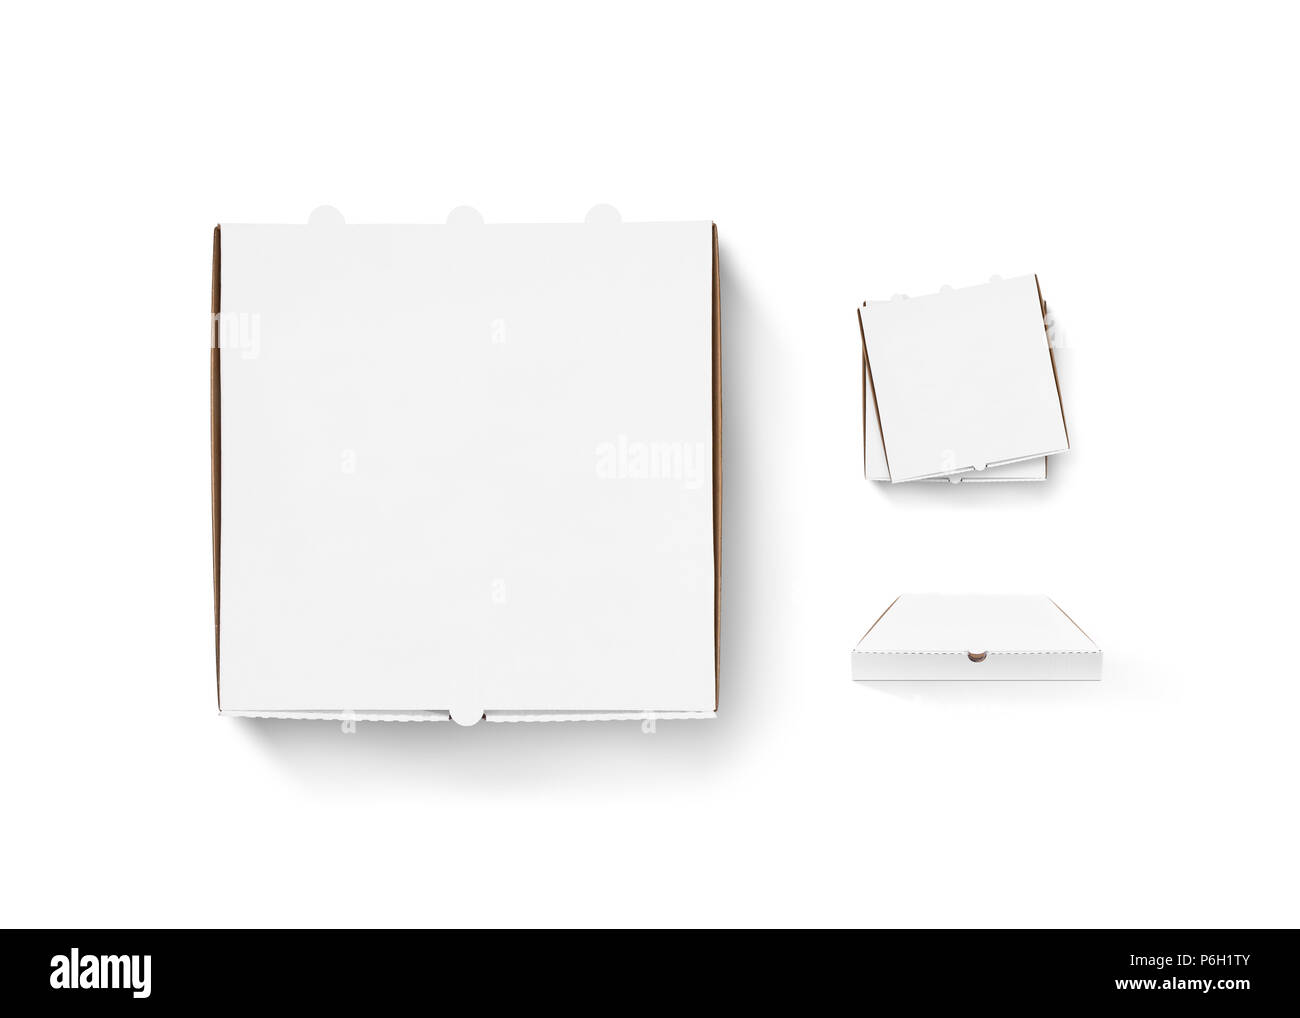 pizza box design  Pizza box design, Pizza boxes, Pizza design